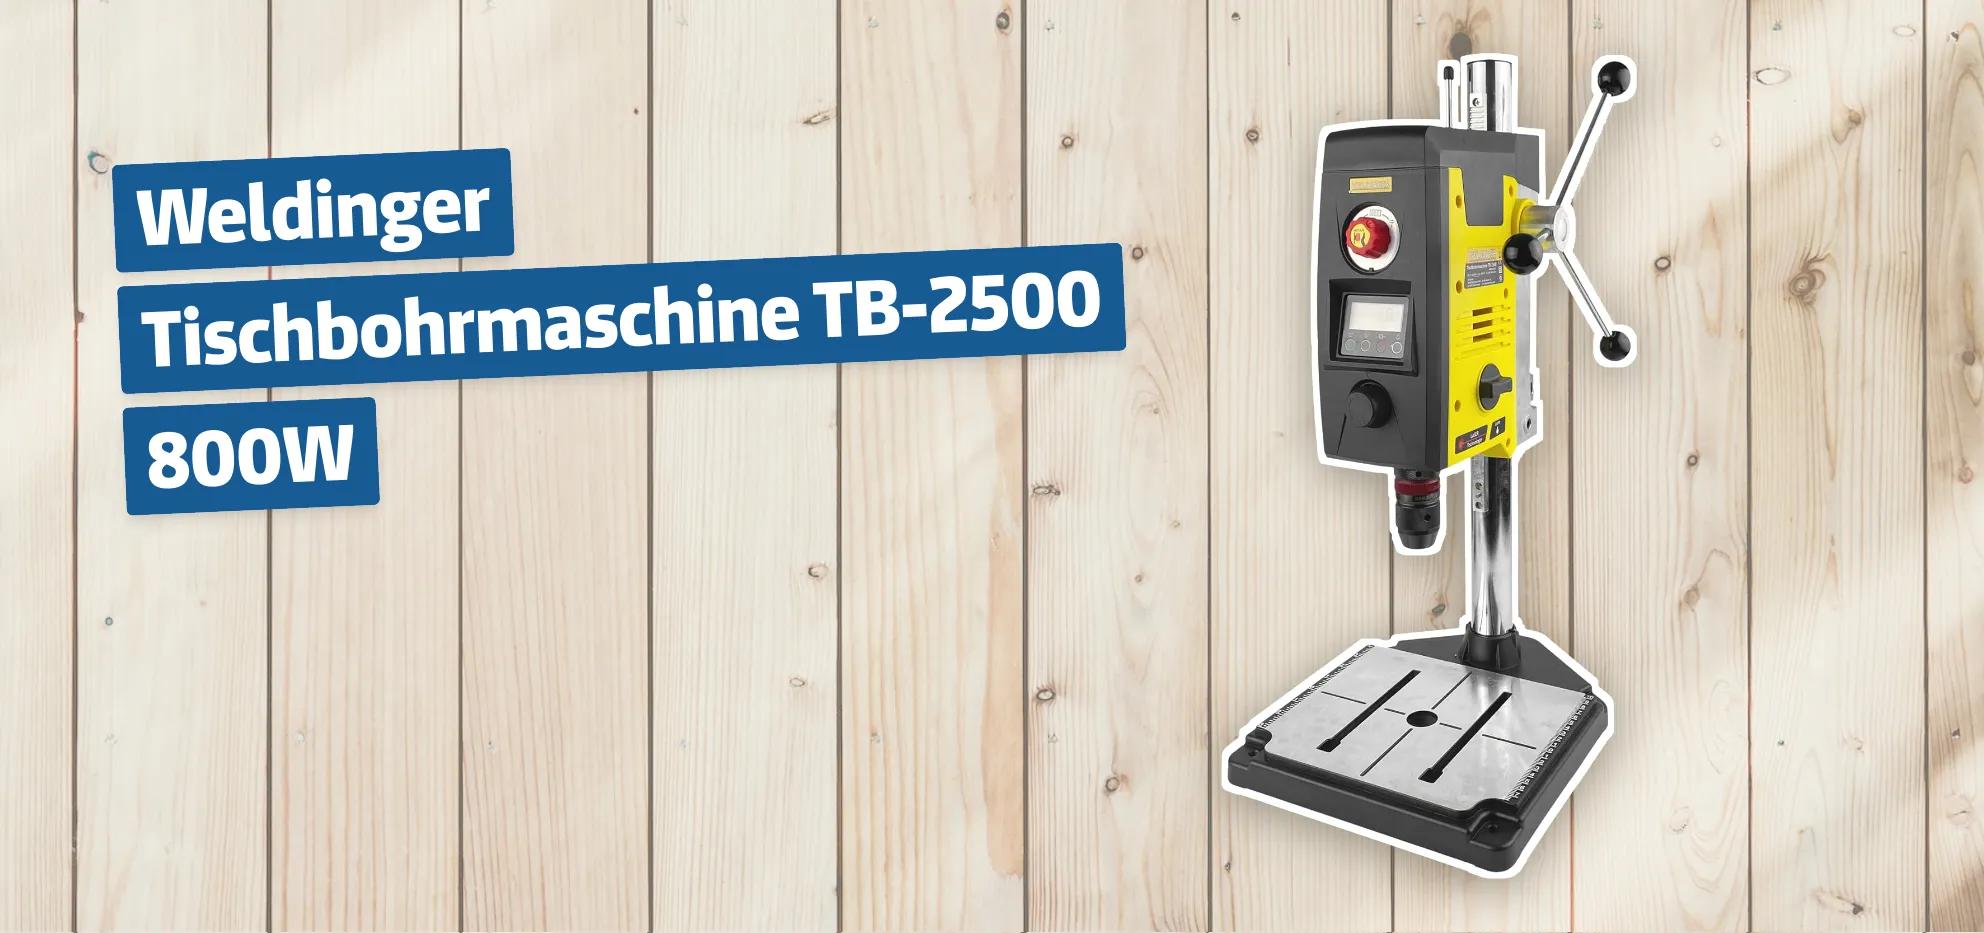 Weldinger Tischbohrmaschine TB-2500 800W